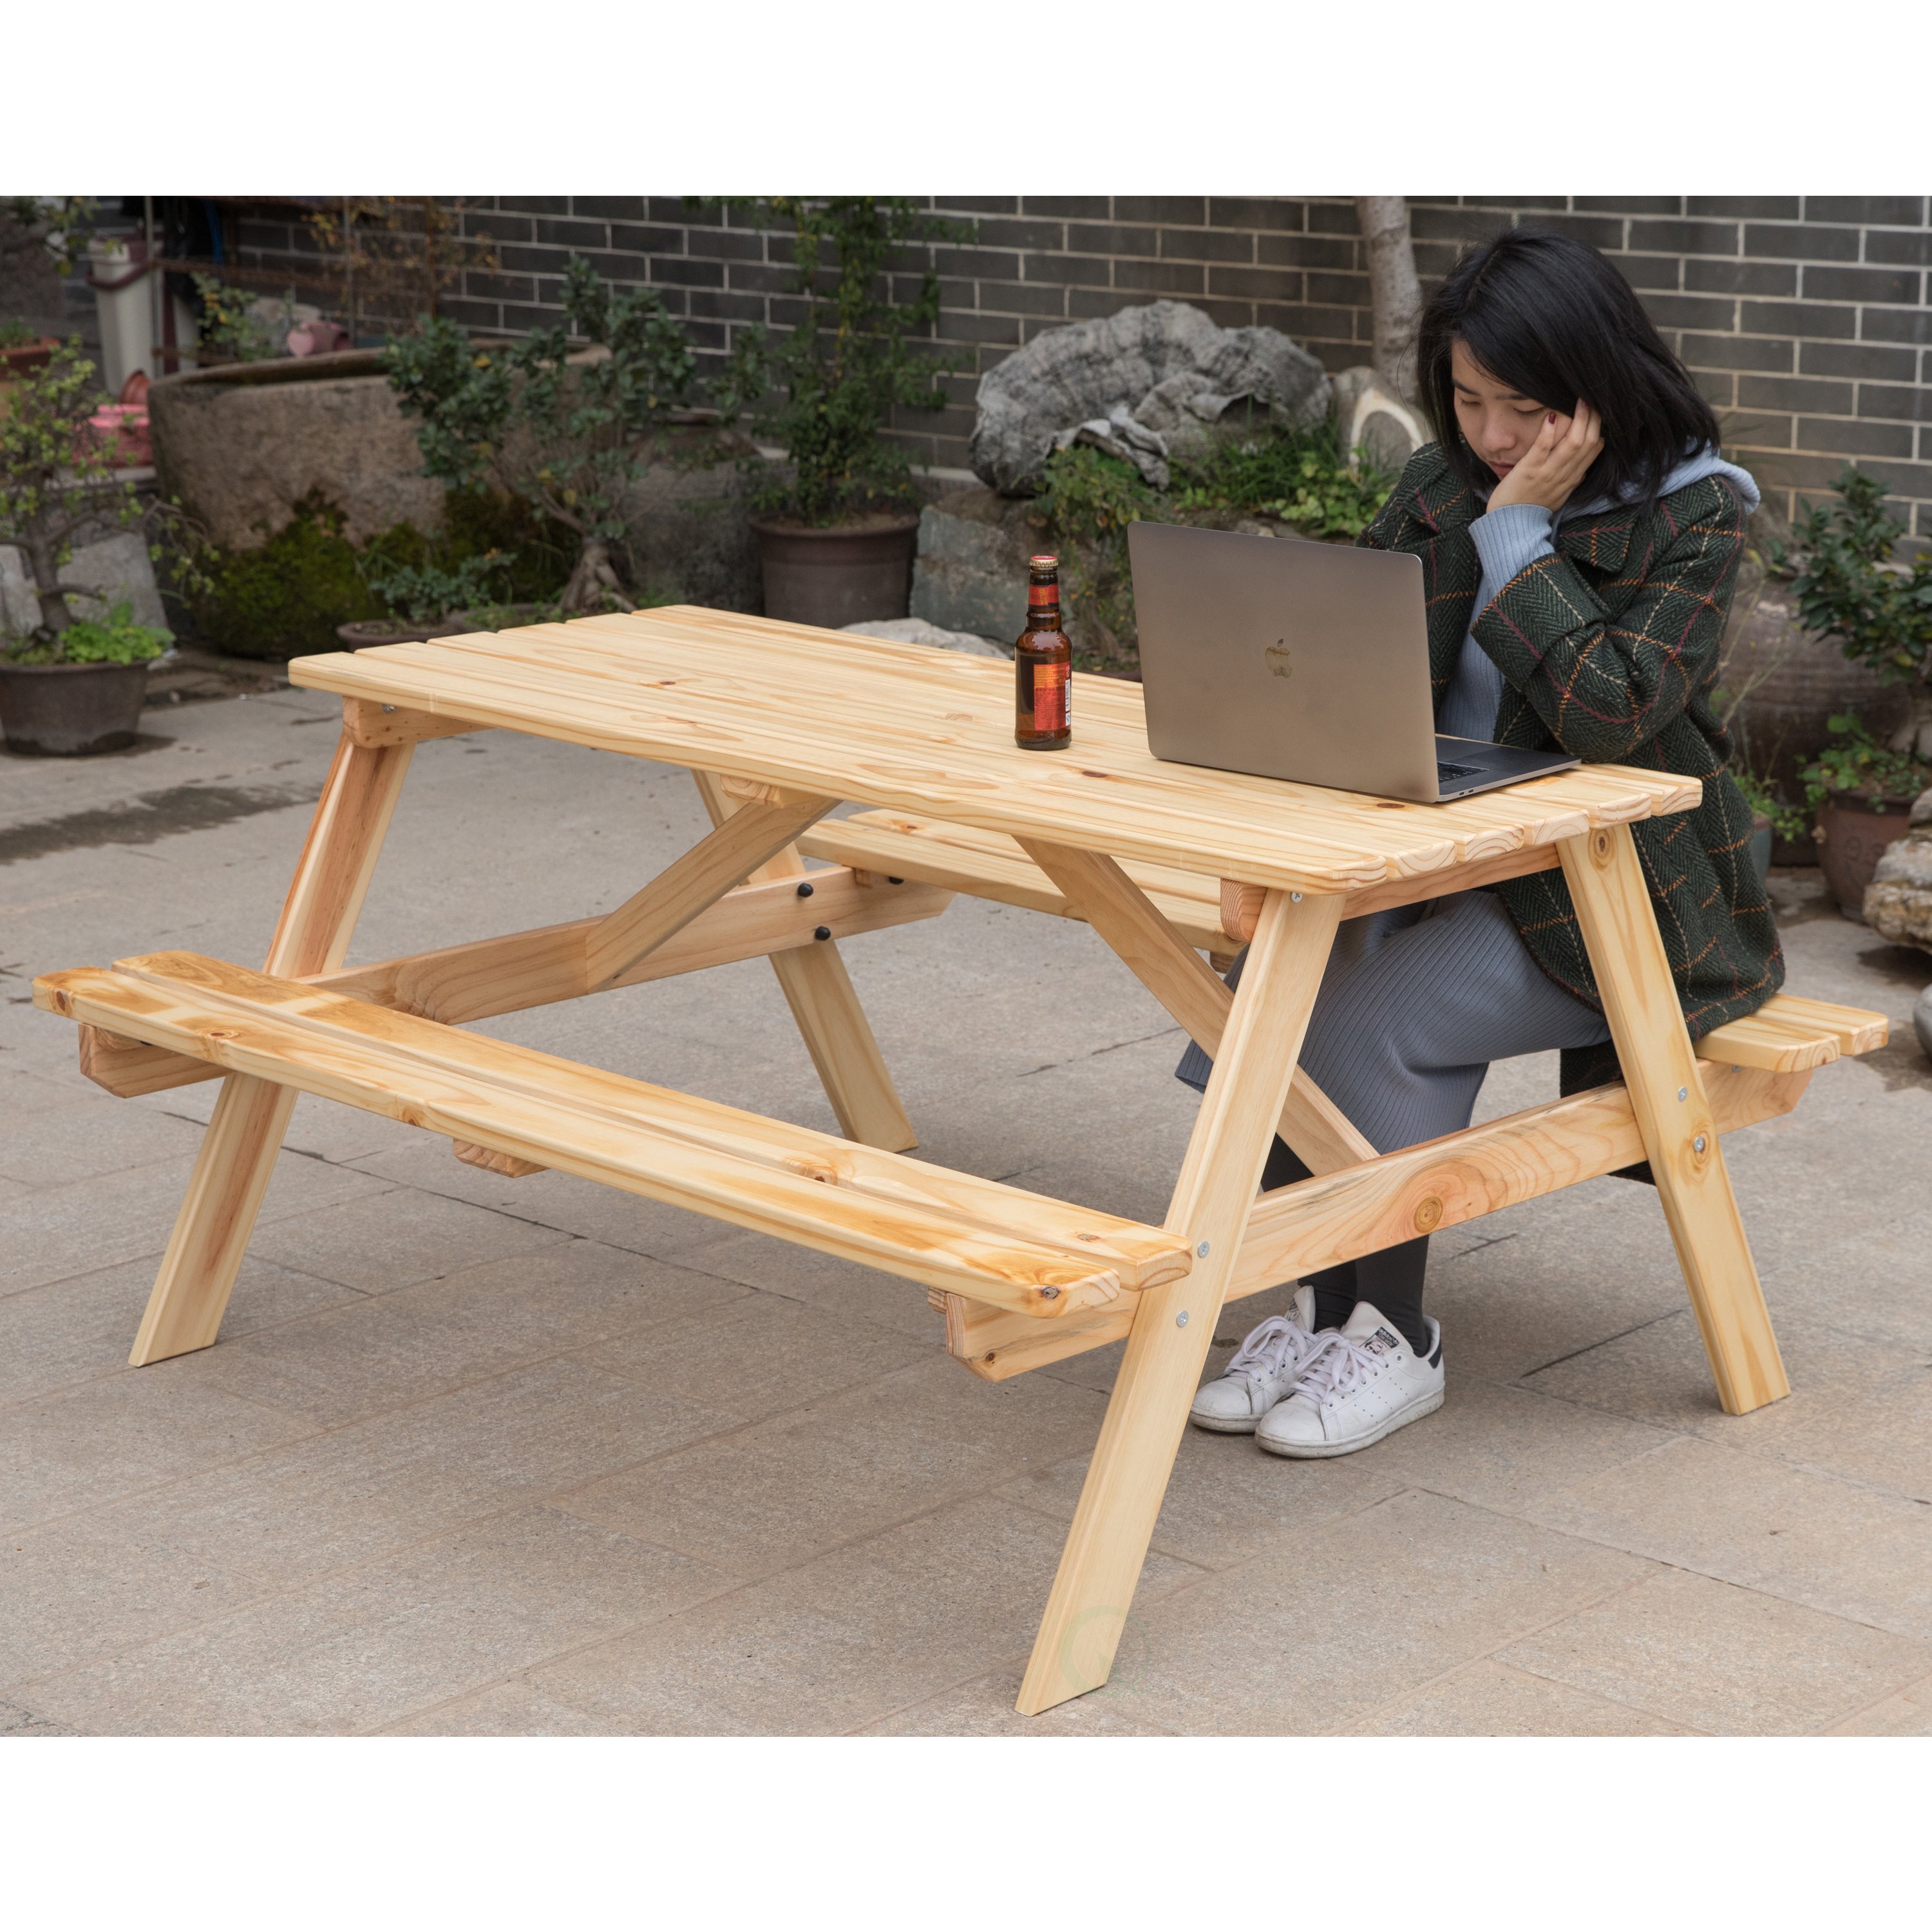 A-Frame Outdoor Wooden Patio Deck Garden Picnic Table - image 3 of 10